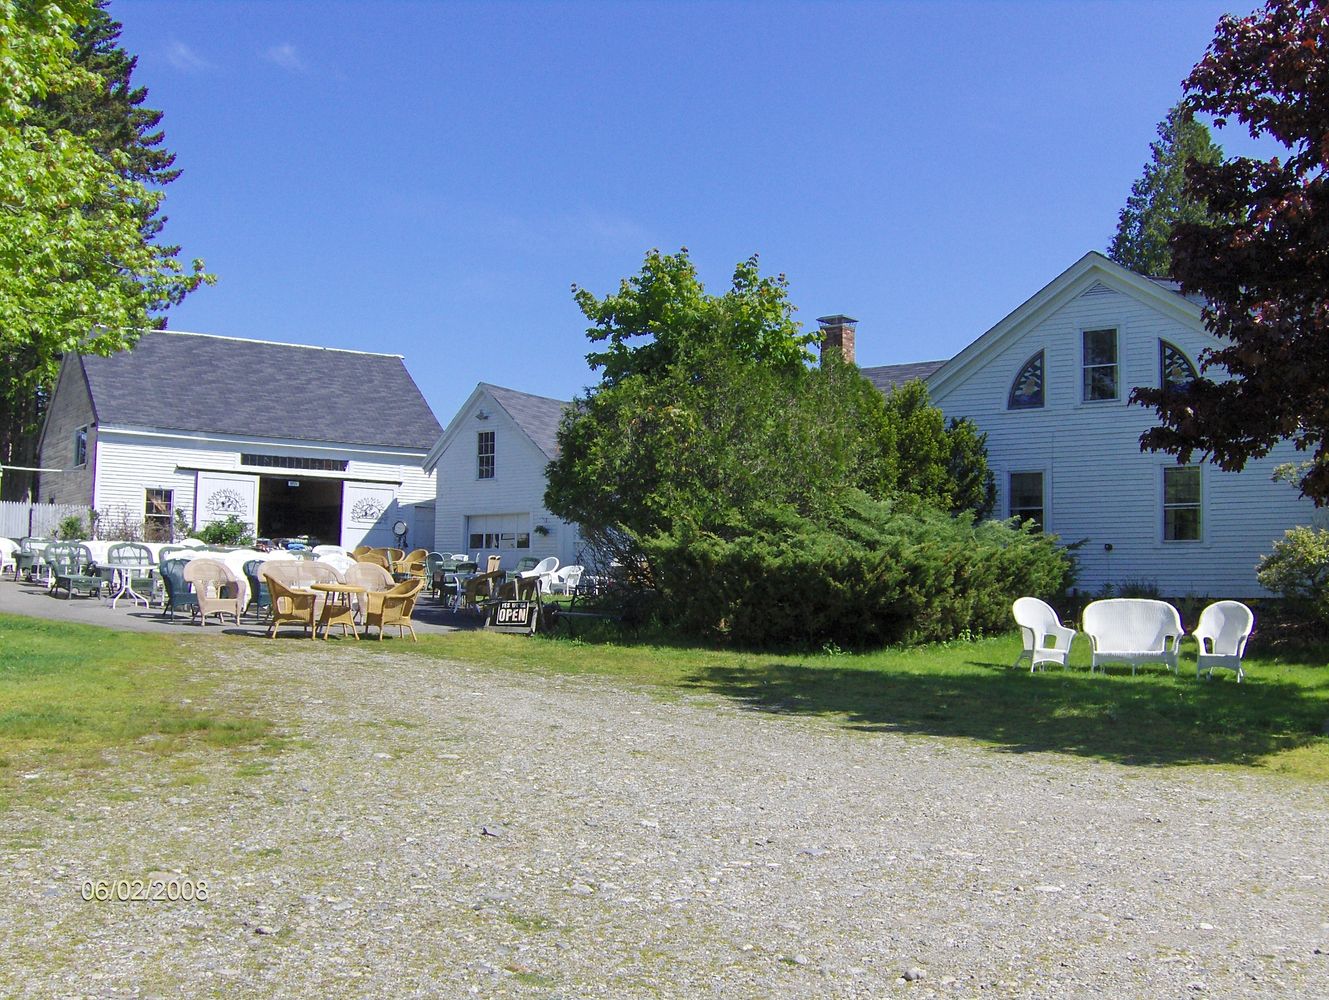 Home of Maine Wicker / Frazee's Wicker
Rt. 1   247 W. Main  St.
Searsport, Maine 04974
207-548-2467